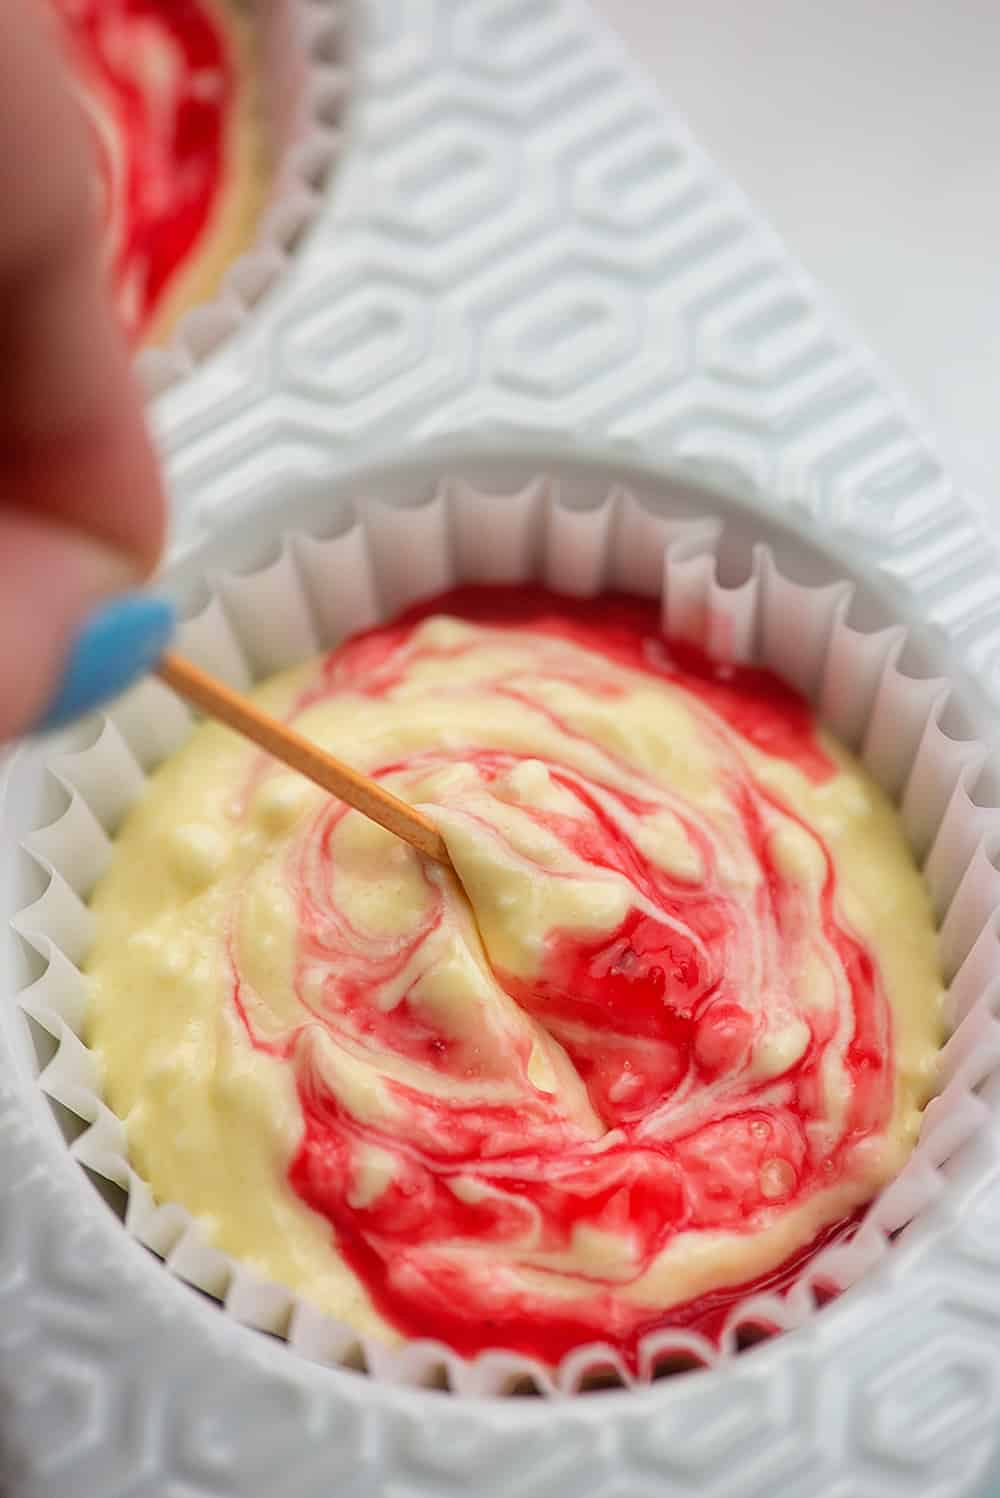 raspberry sauce swirled into cheesecake